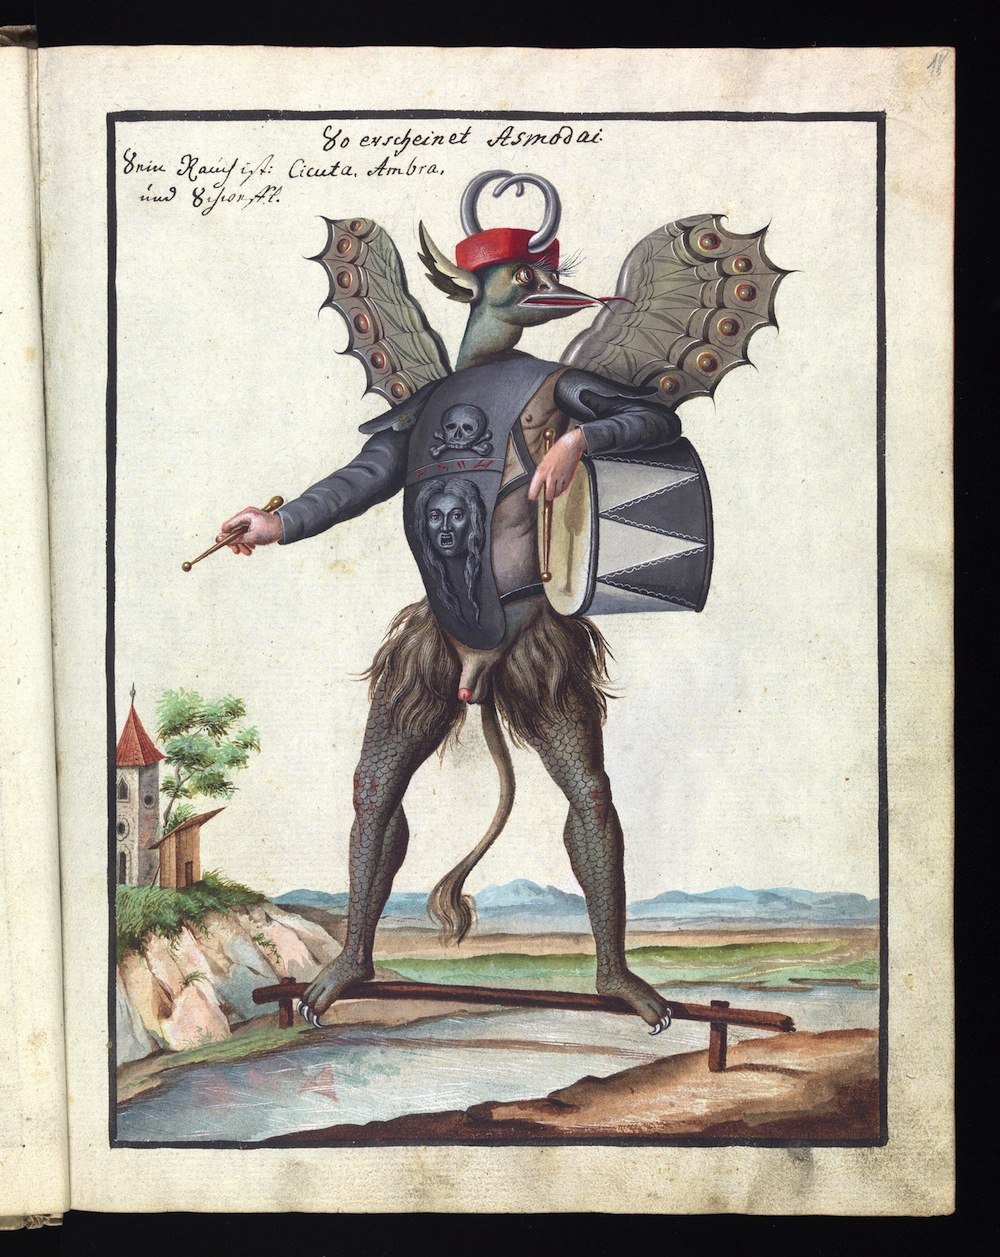 ompendium rarissimum totius Artis Magicae sistematisatae per celeberrimos Artis hujus Magistros, a book of "Satanic" illustrations from the 18th century 